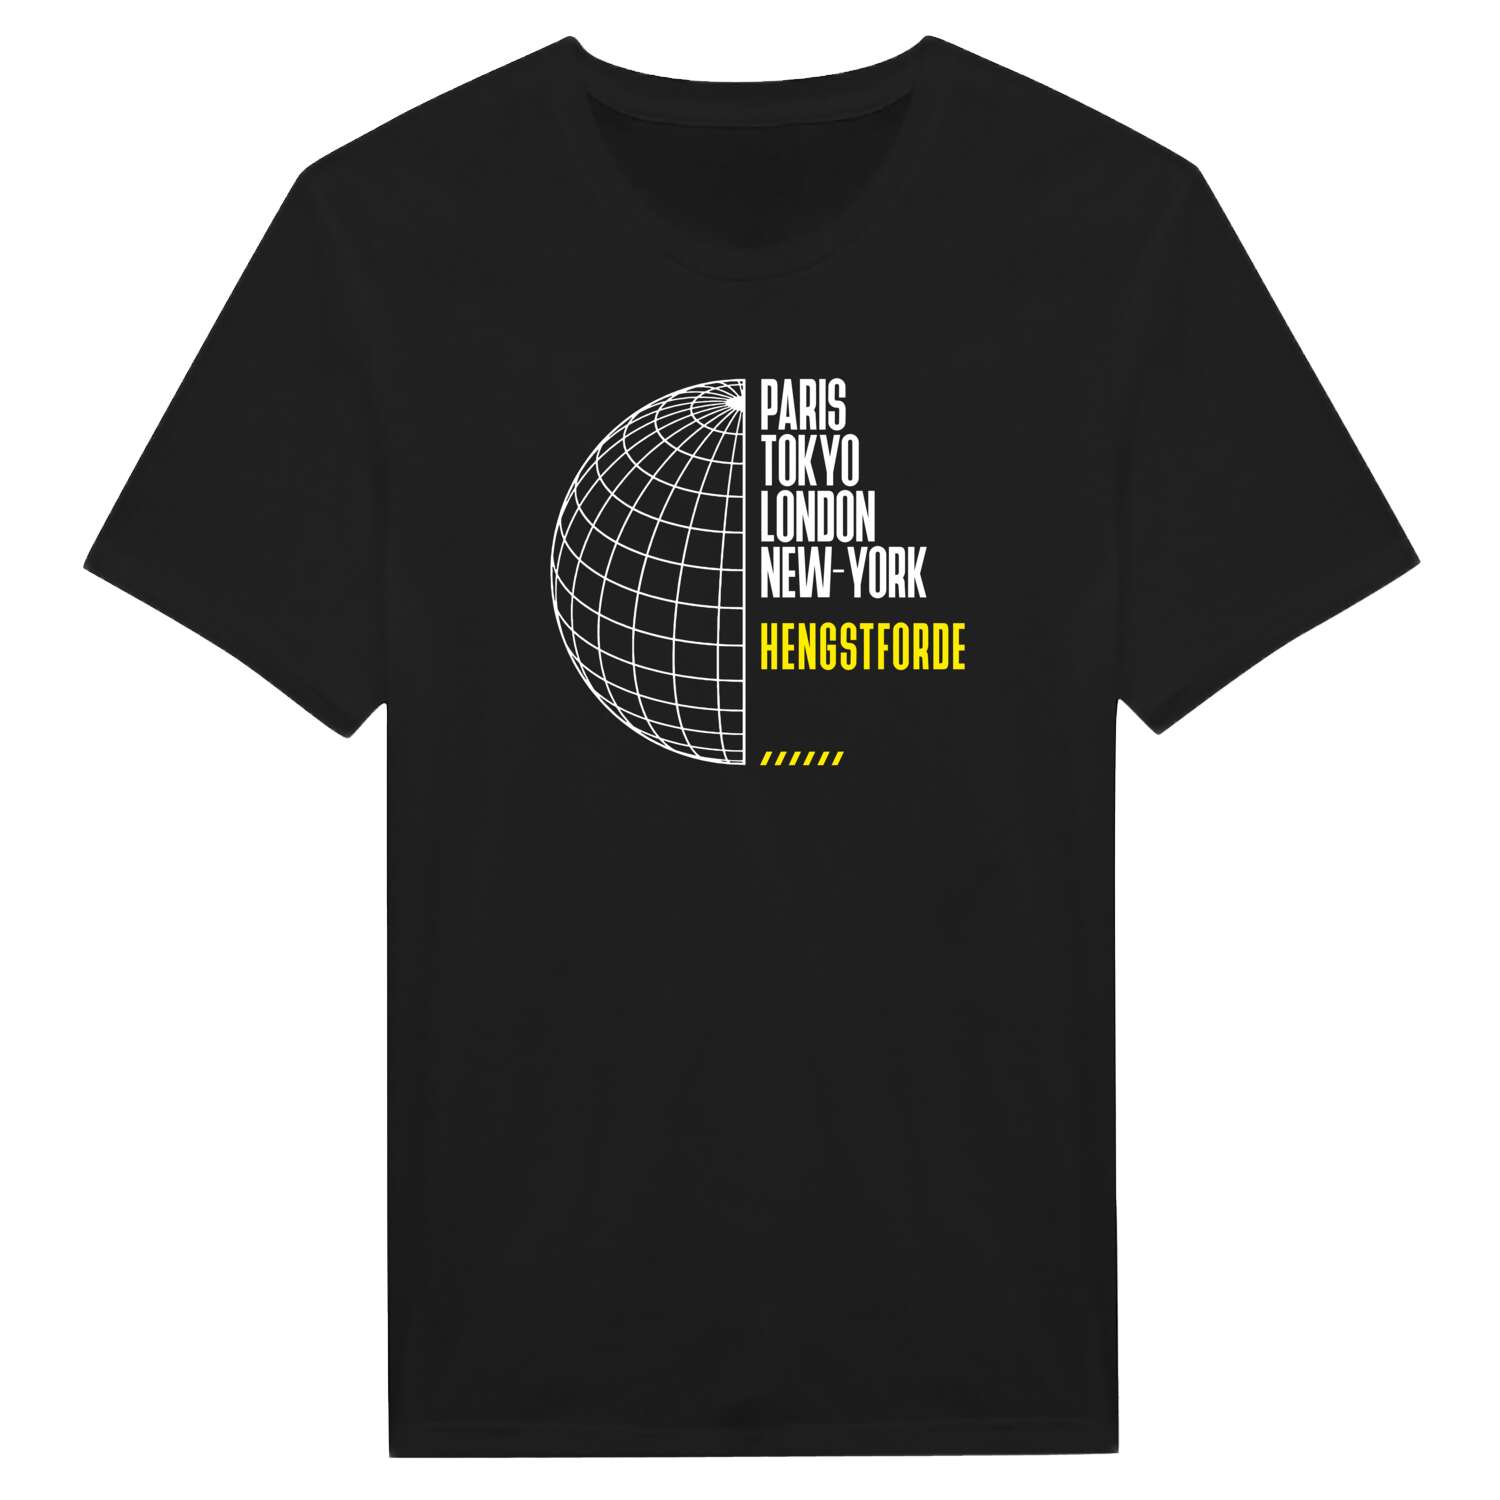 Hengstforde T-Shirt »Paris Tokyo London«